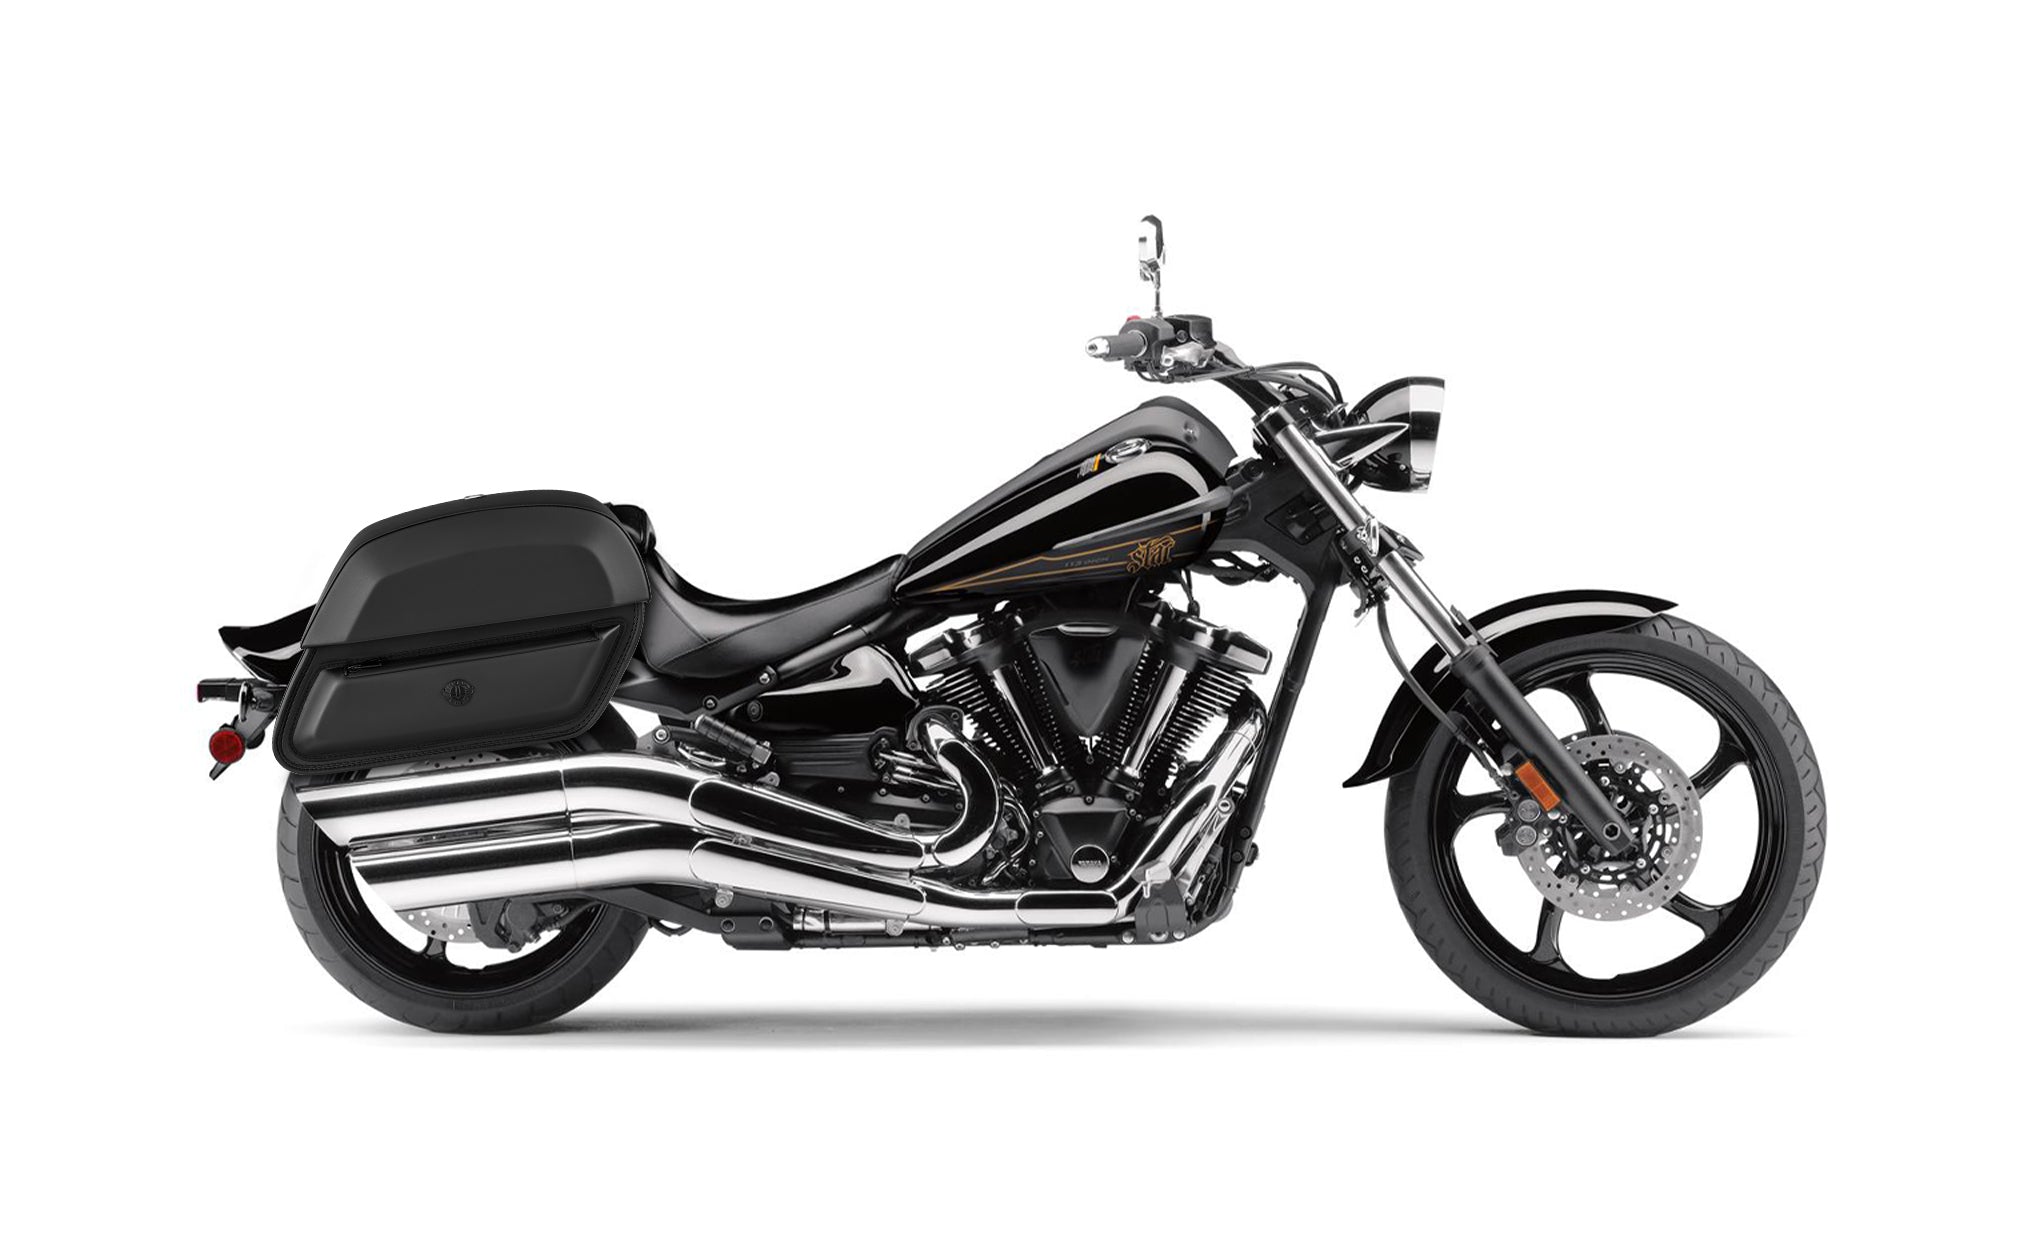 28L - Wraith Medium Yamaha Raider Leather Motorcycle Saddlebags BAG on Bike View @expand